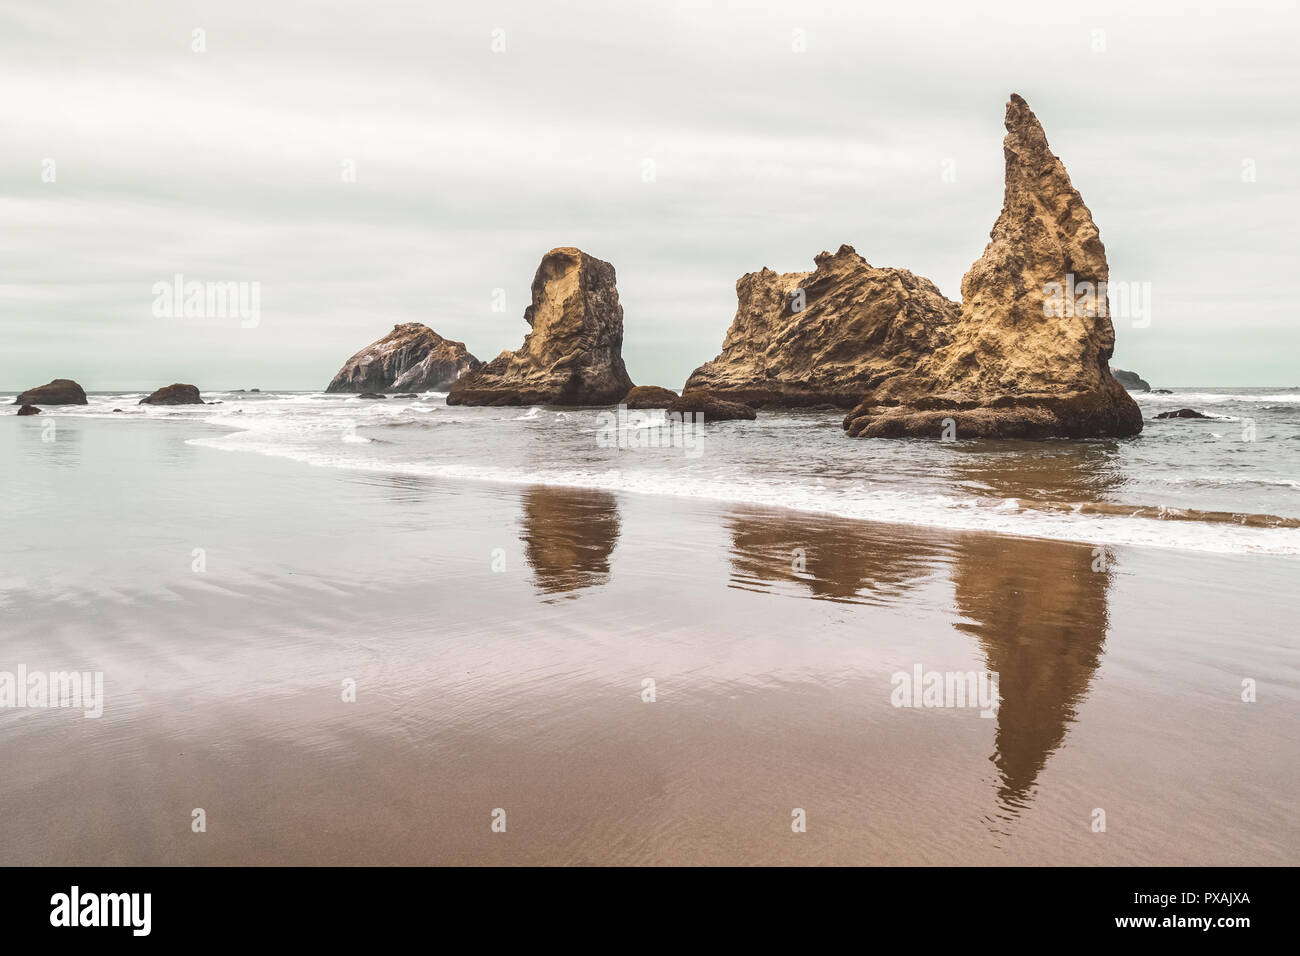 Rocky outcrops or sea stacks along the shores of Bandon Beach, Pacific Northwest Coast, Oregon, USA. Stock Photo